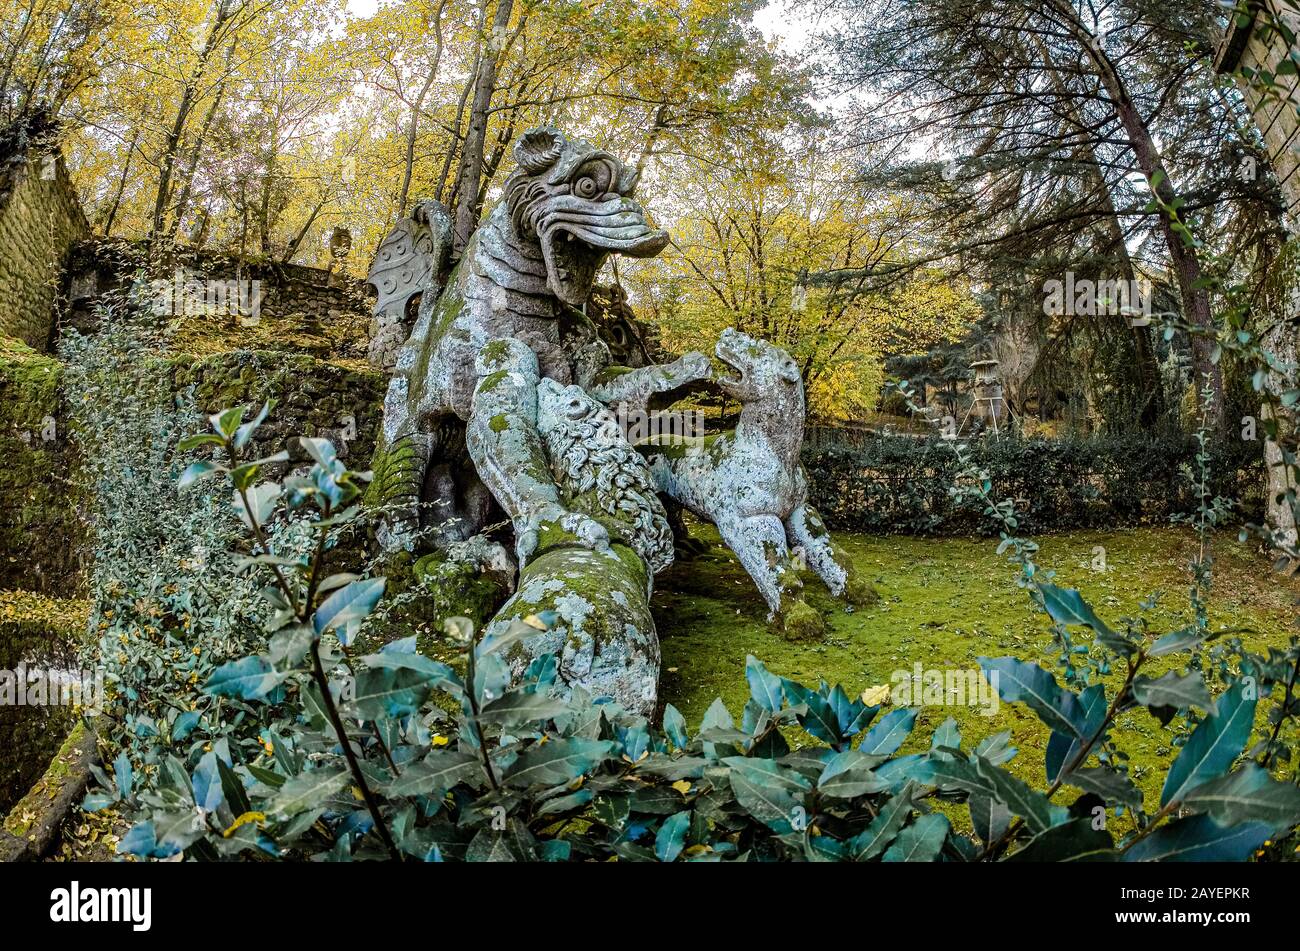 Italie, Latium, le jardin de Bomarzo de Monster ( Giardino Dei Mostri ) - Dragon lutte contre un chien, un loup, un lion Banque D'Images